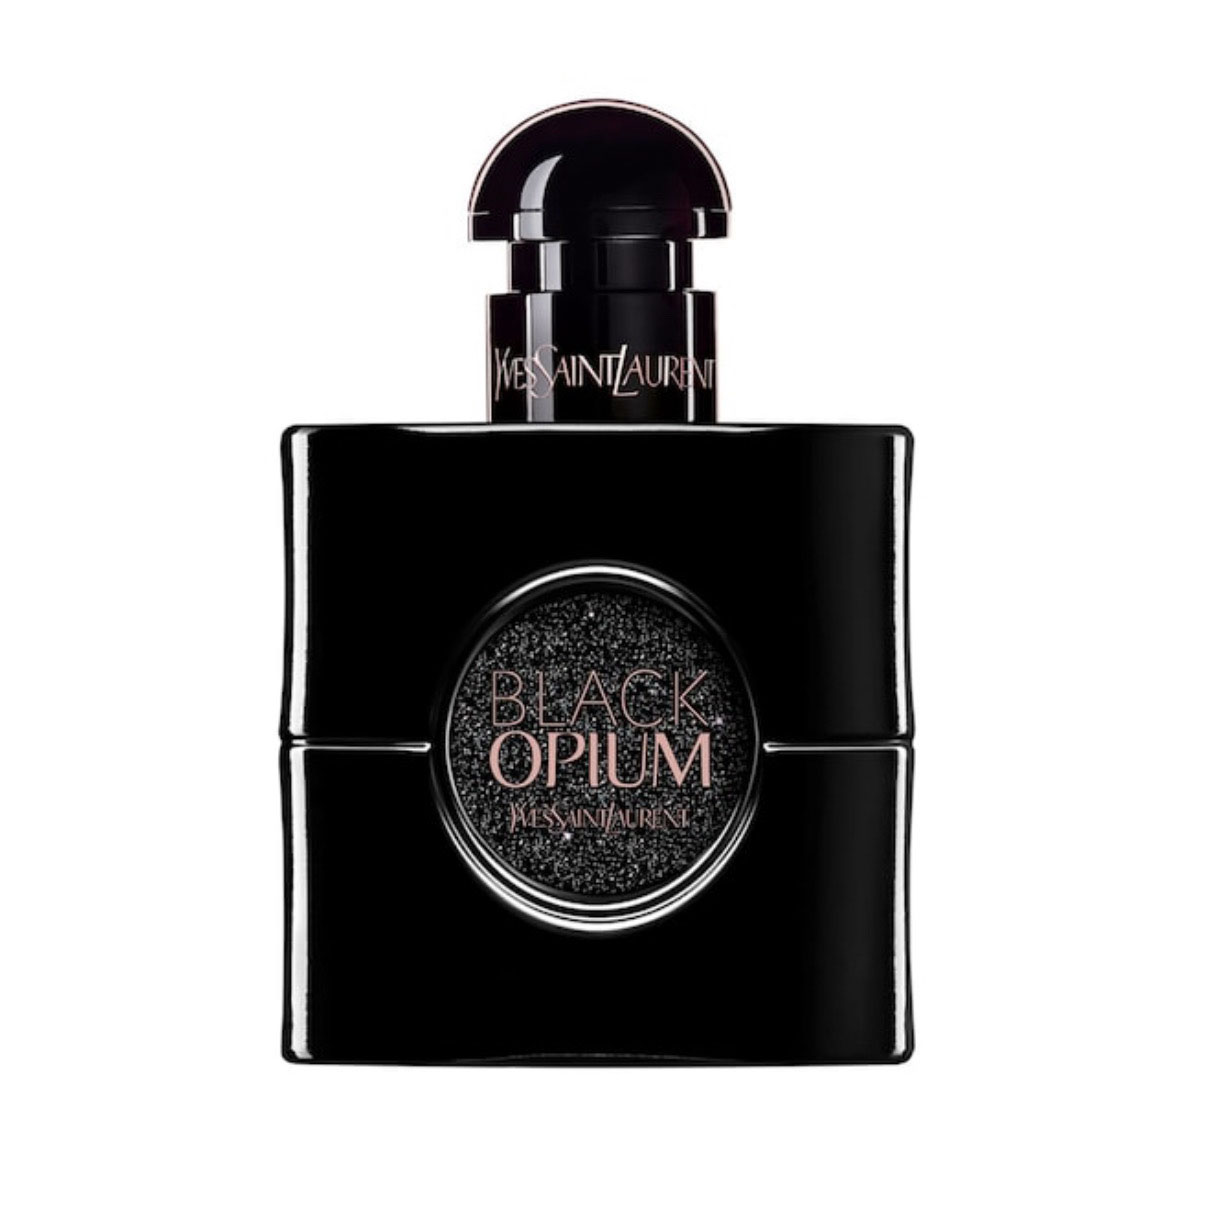 Yves Saint Laurent – Black Opium Le Parfum